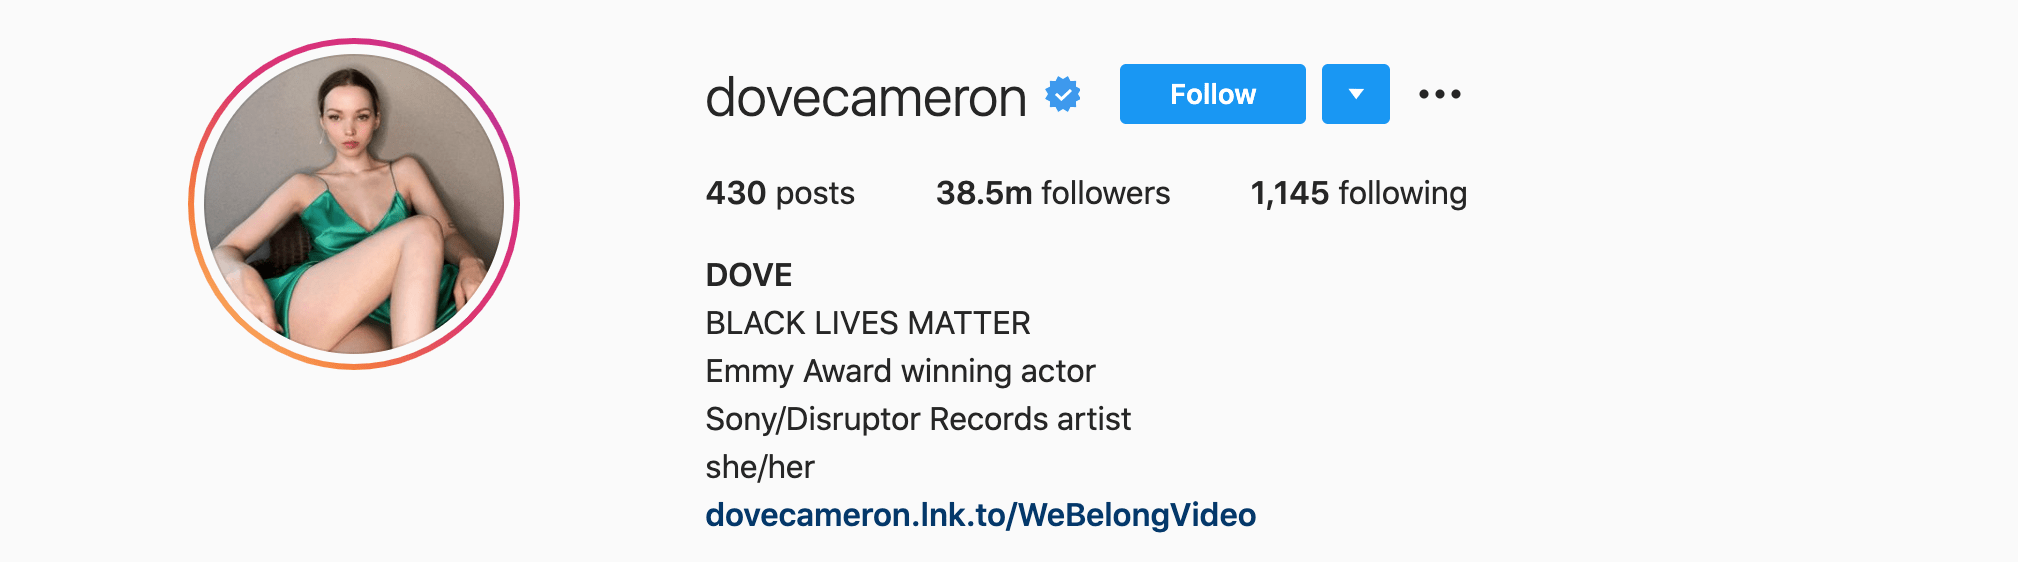 Top Instagram Influencers - DOVE CAMERON